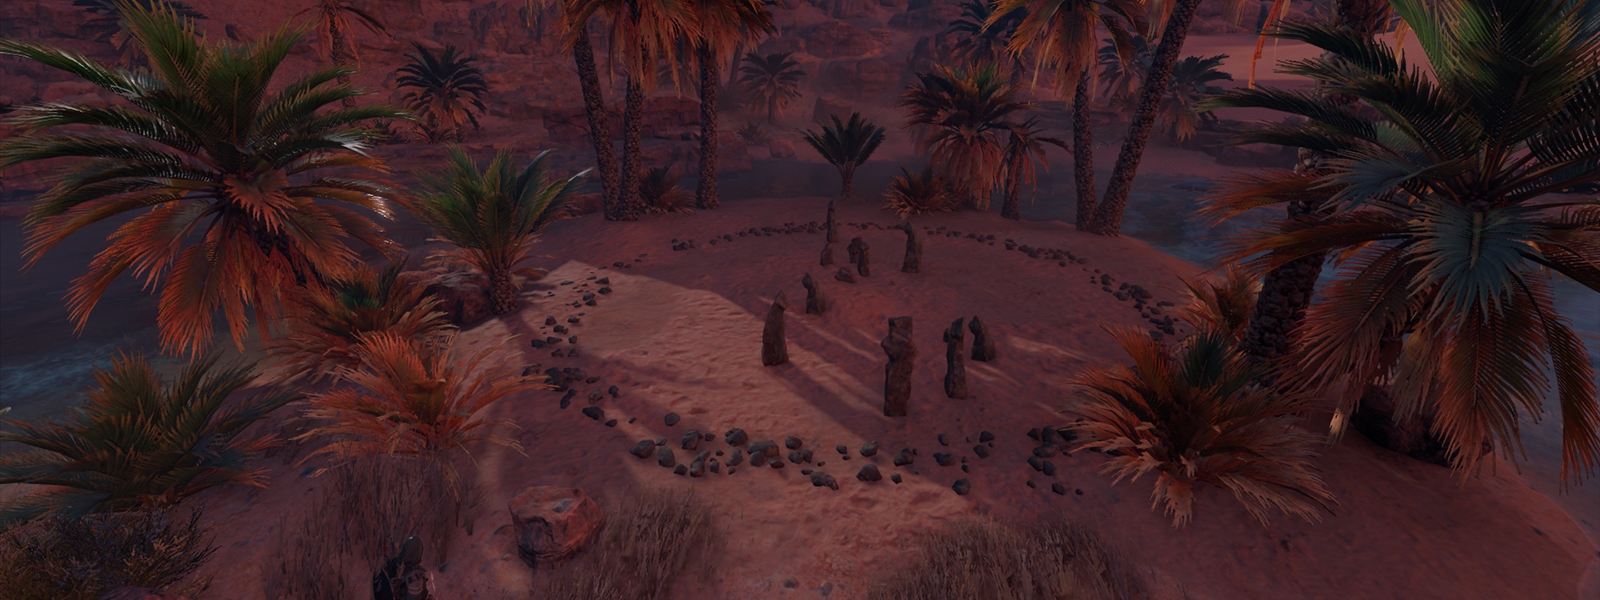 Assassins Creed Origins Незримые: все круги камней в Синае